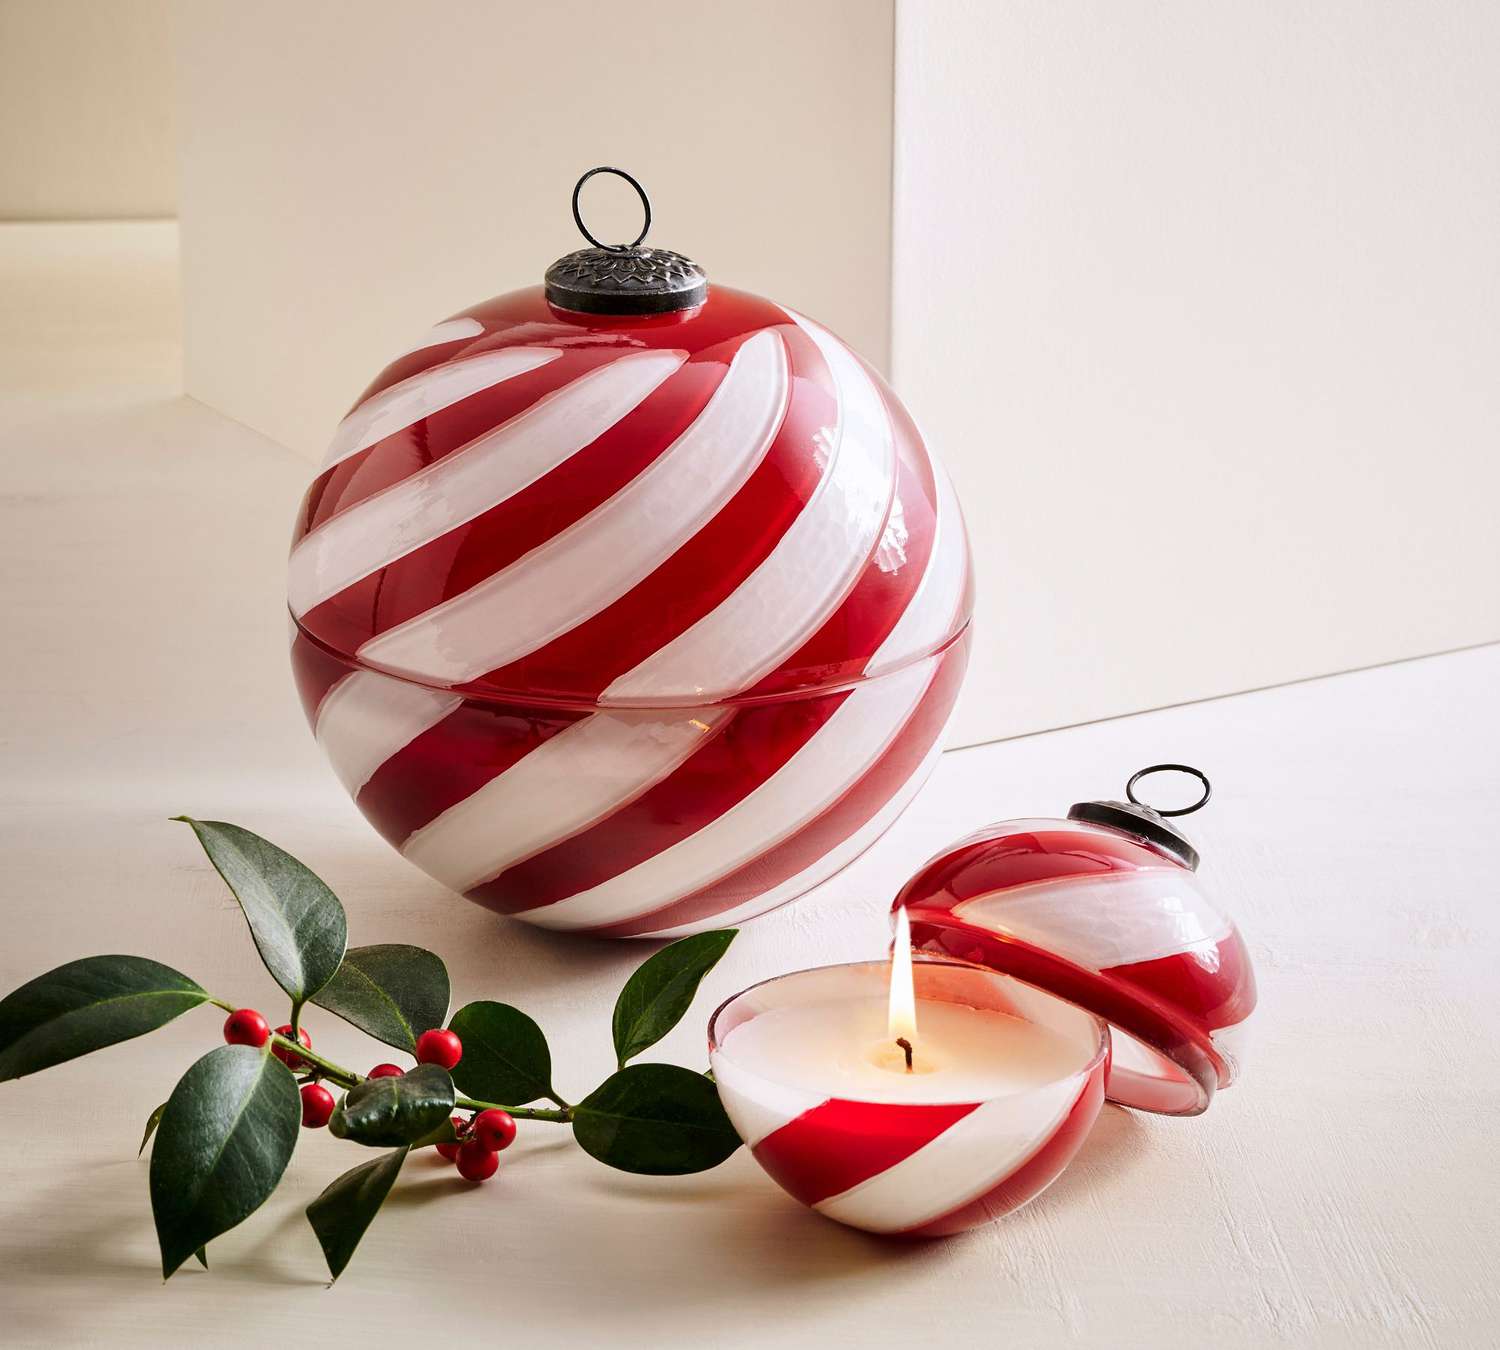 Kerze in Form eines Ornaments mit roten und weißen Wirbeln